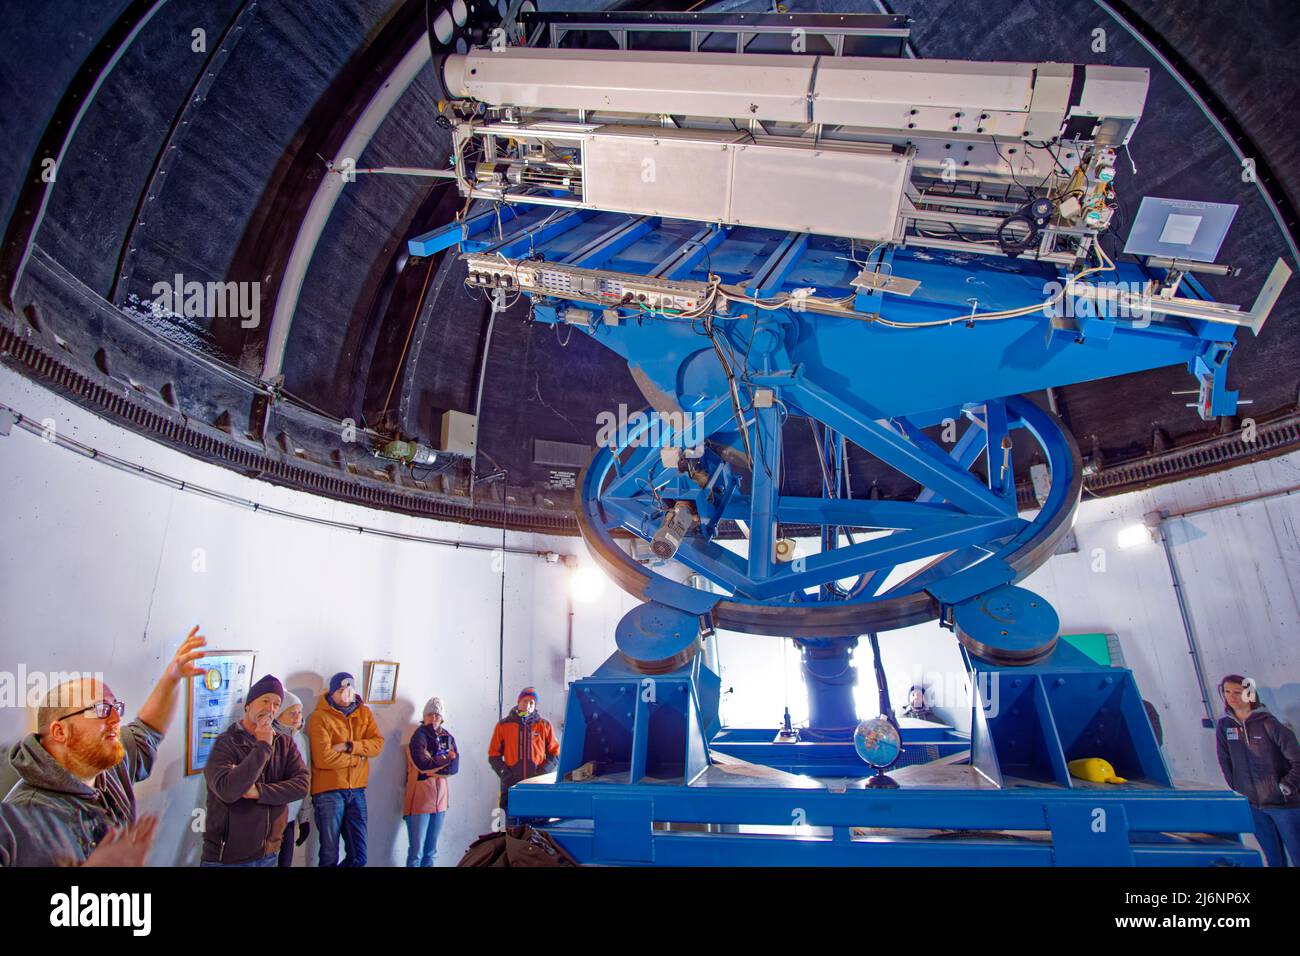 A los visitantes del Observatorio Pic du Midi, cerca de Bagneres de Bigorre, Francia, se les da una explicación sobre el funcionamiento del Multiple Coronagraph. Foto de stock